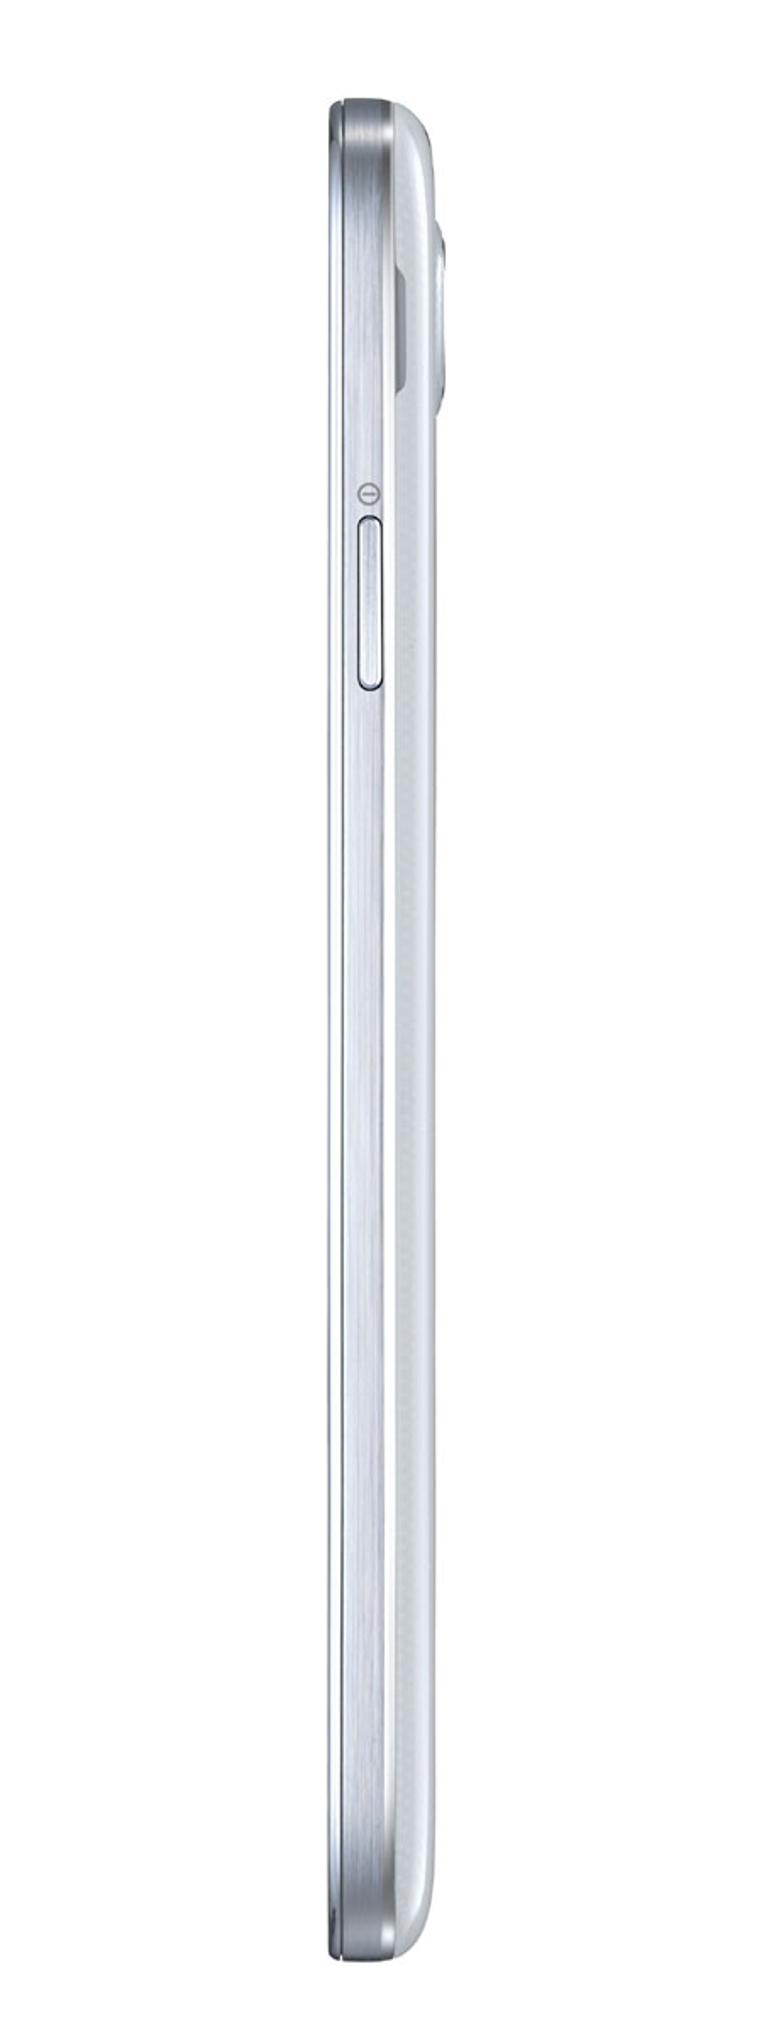 Samsung Galaxy S4 blanco de perfil